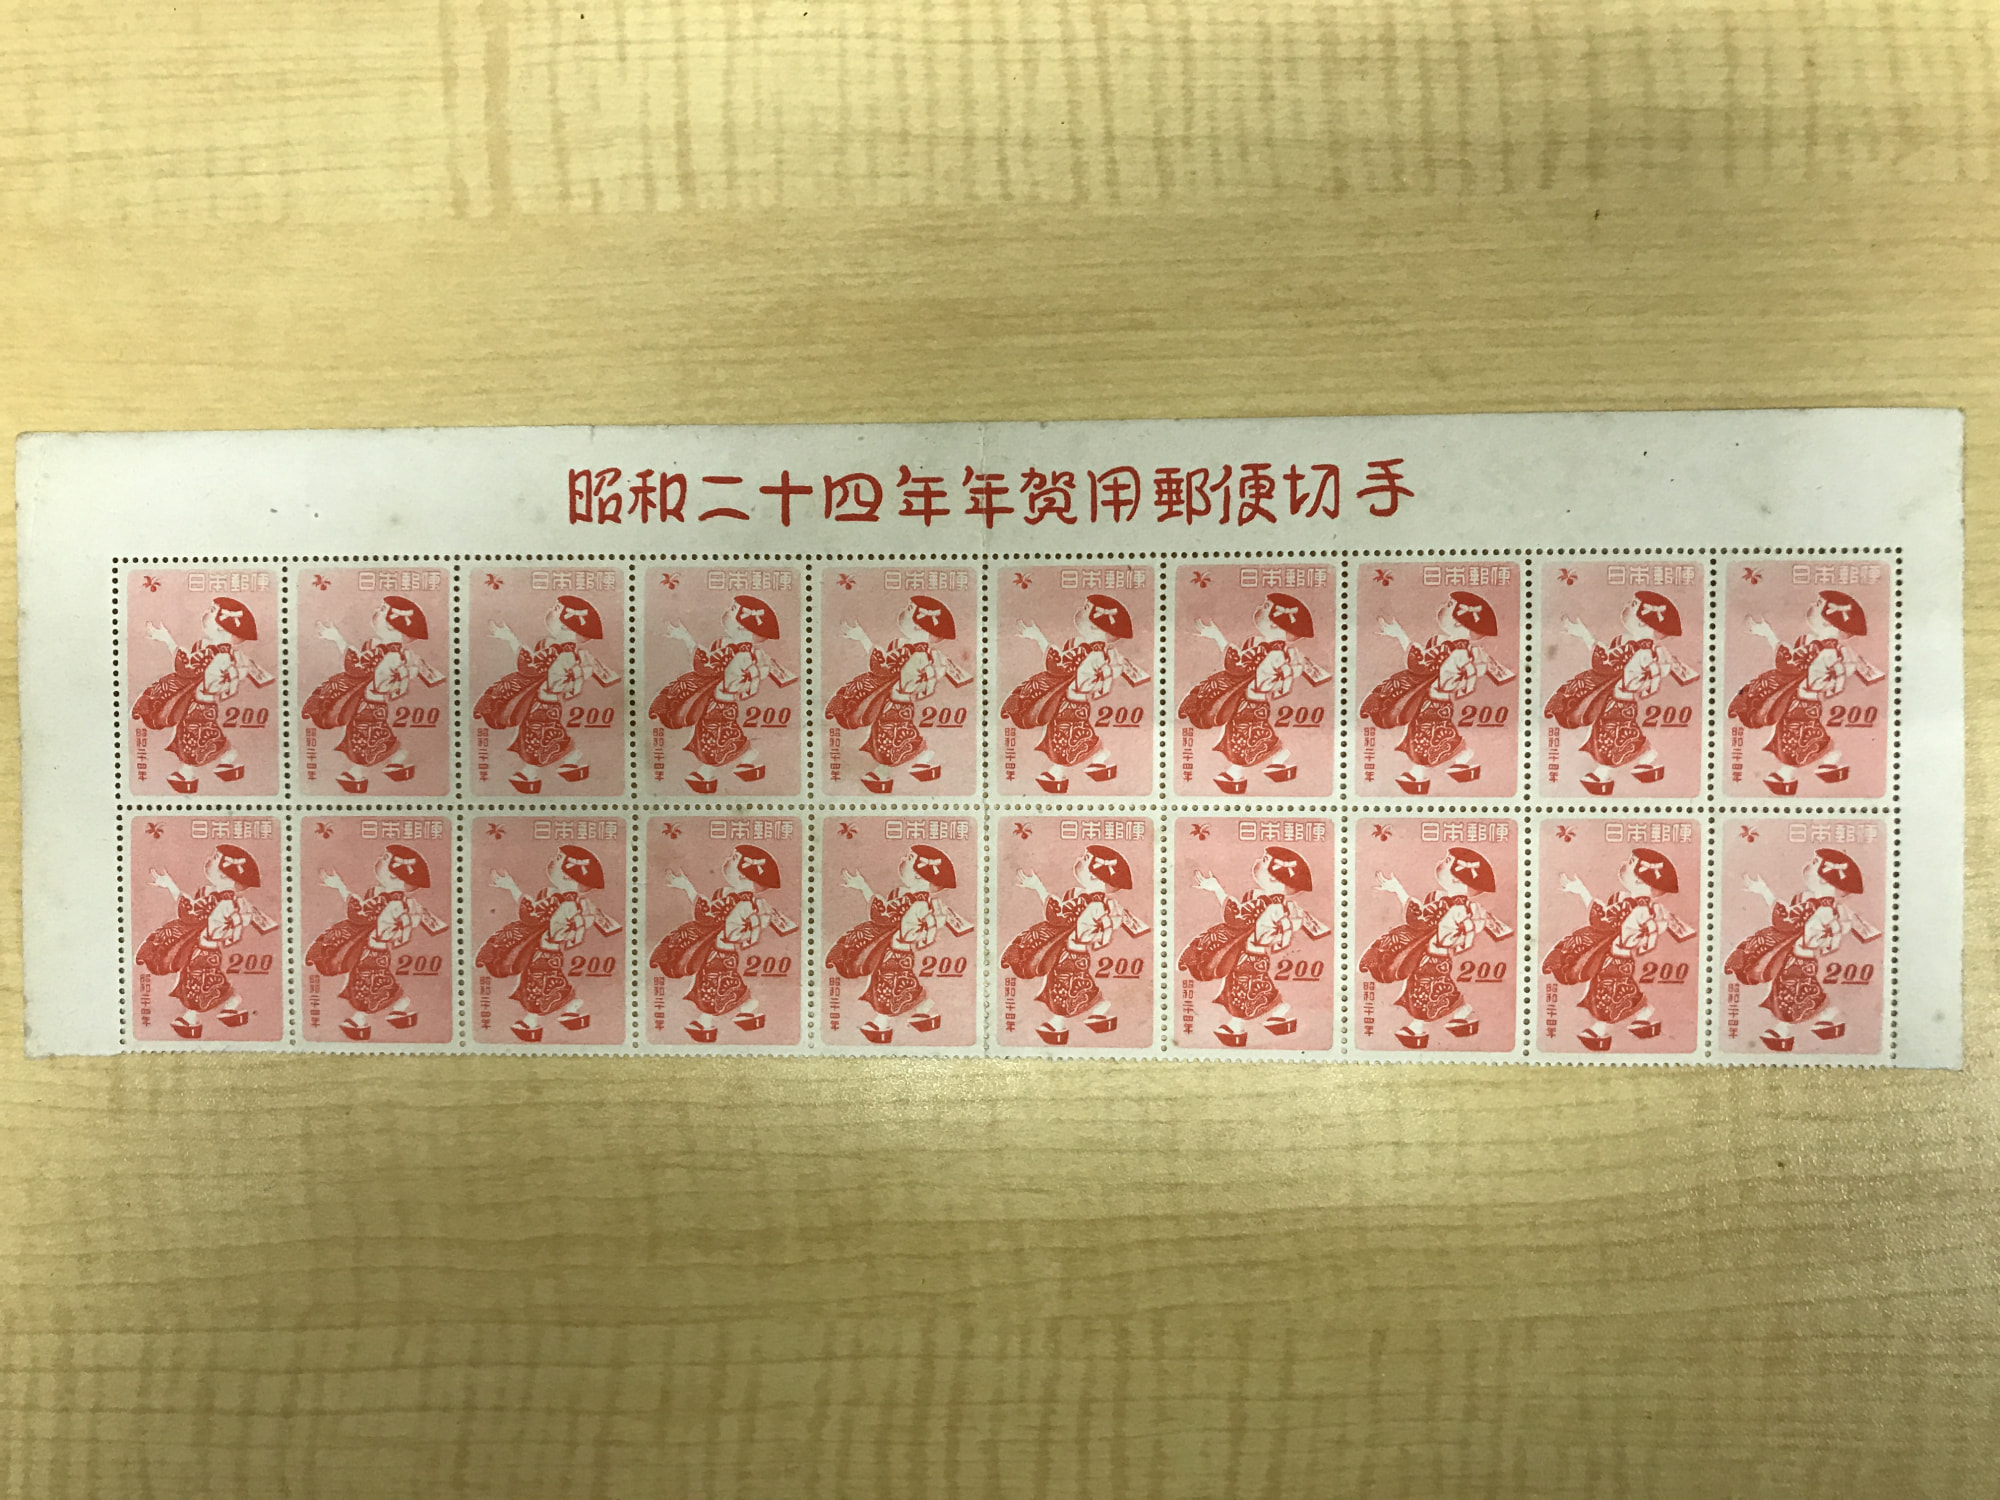 年賀切手 昭和24年 はねつき2円×20枚ブロック